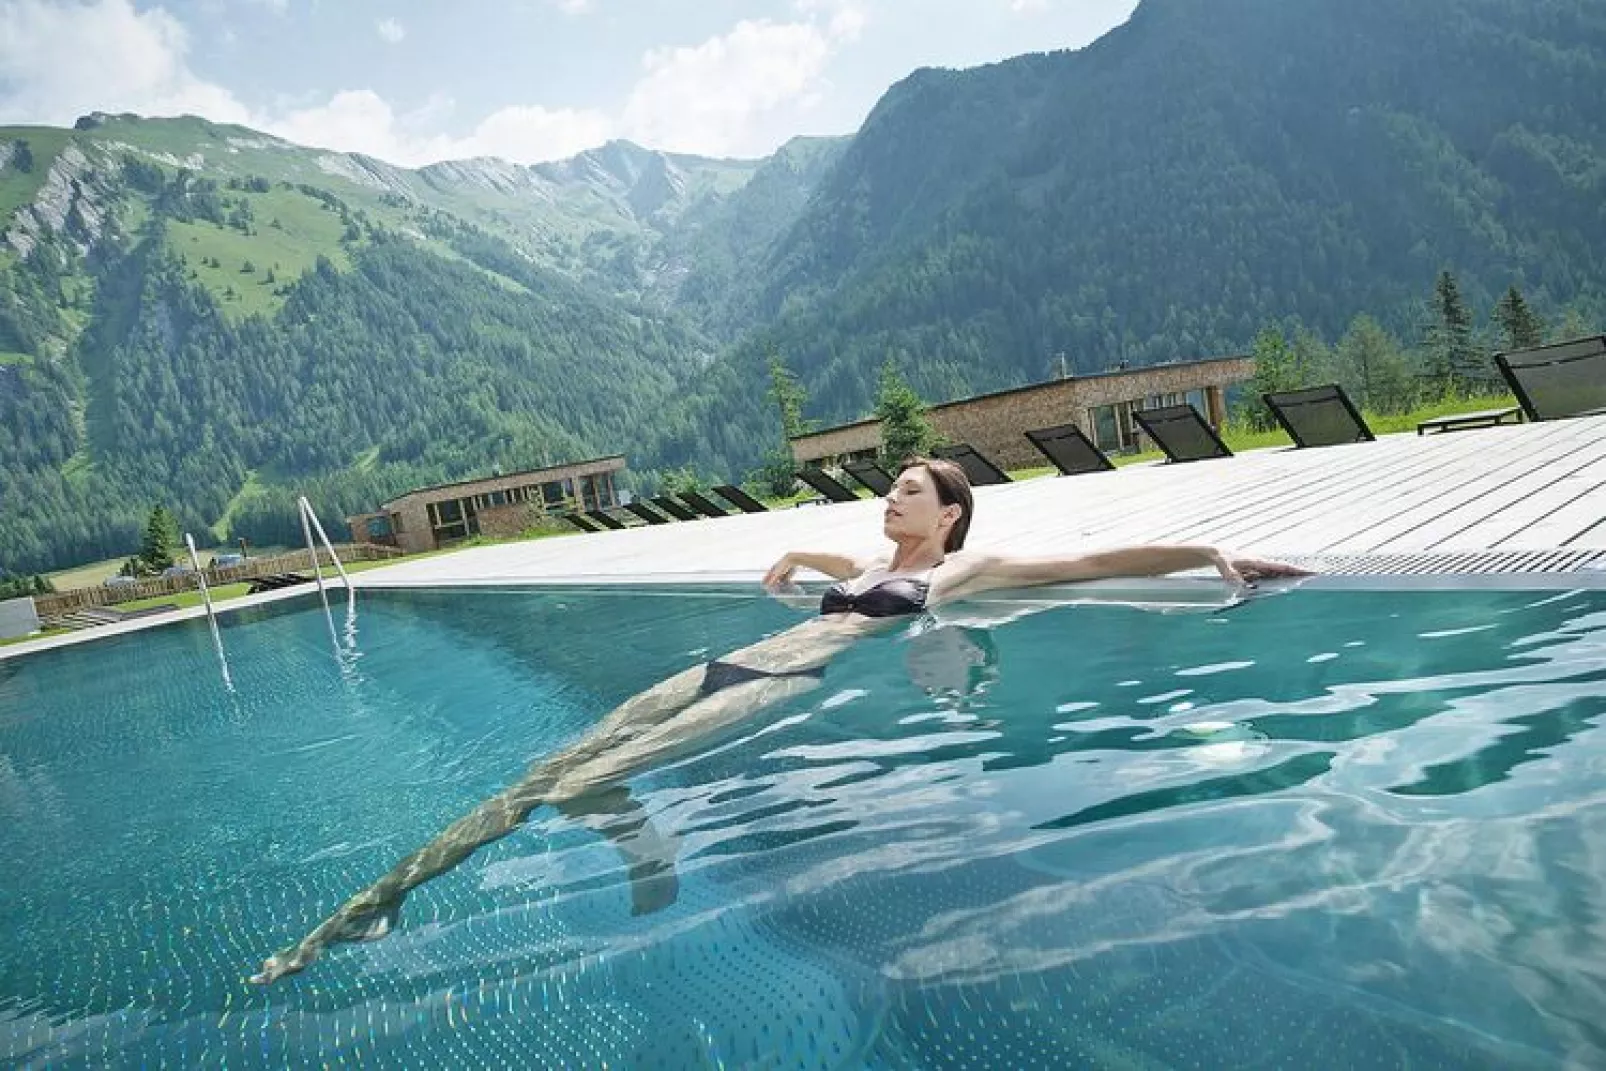 Gradonna Mountain Resort - Klassik - 2 Personen-Zwembad